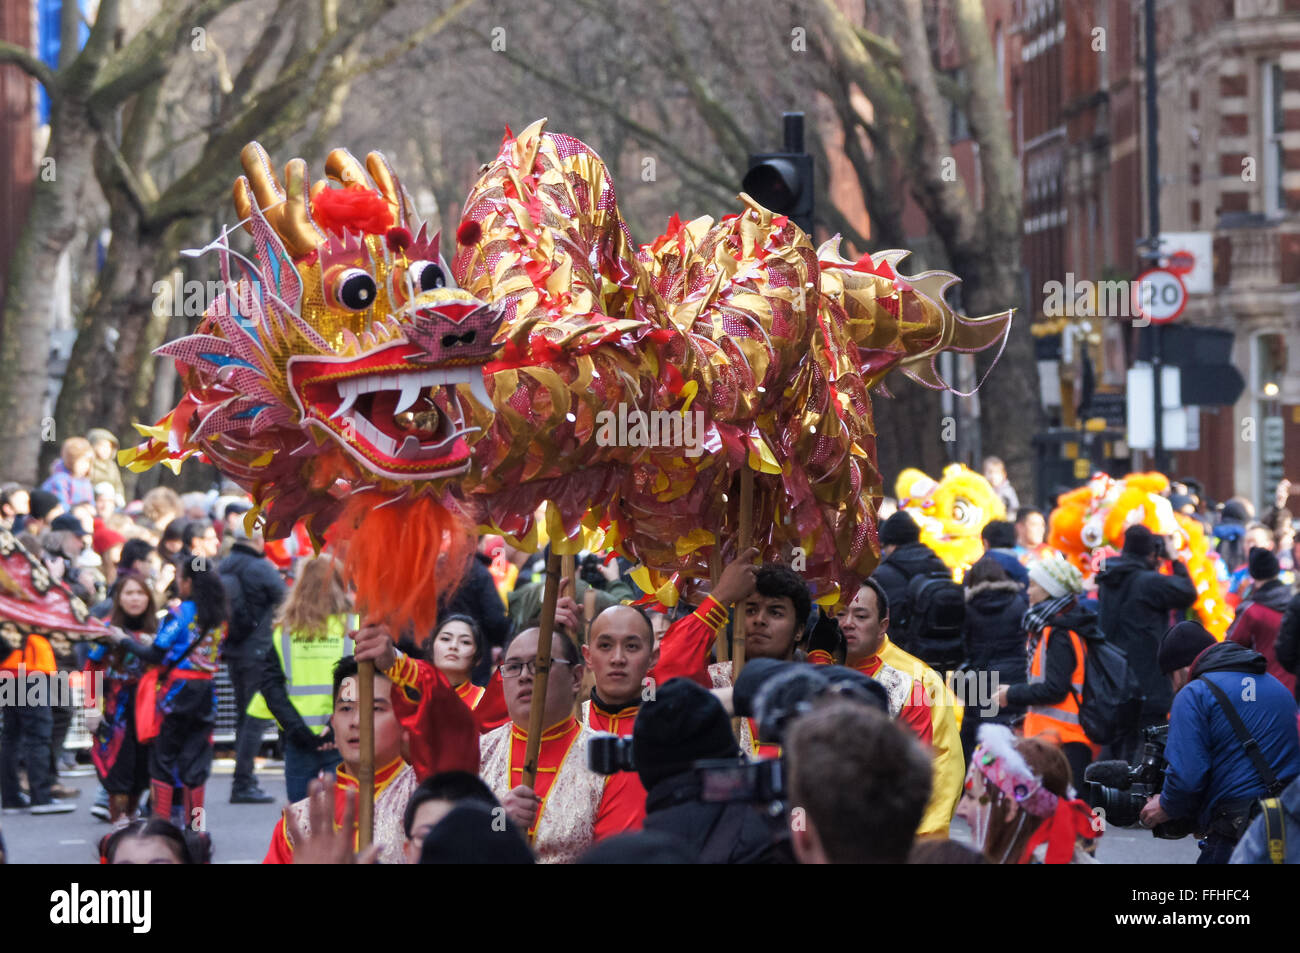 Chinese New Year celebrations in London, England United Kingdom UK Stock Photo